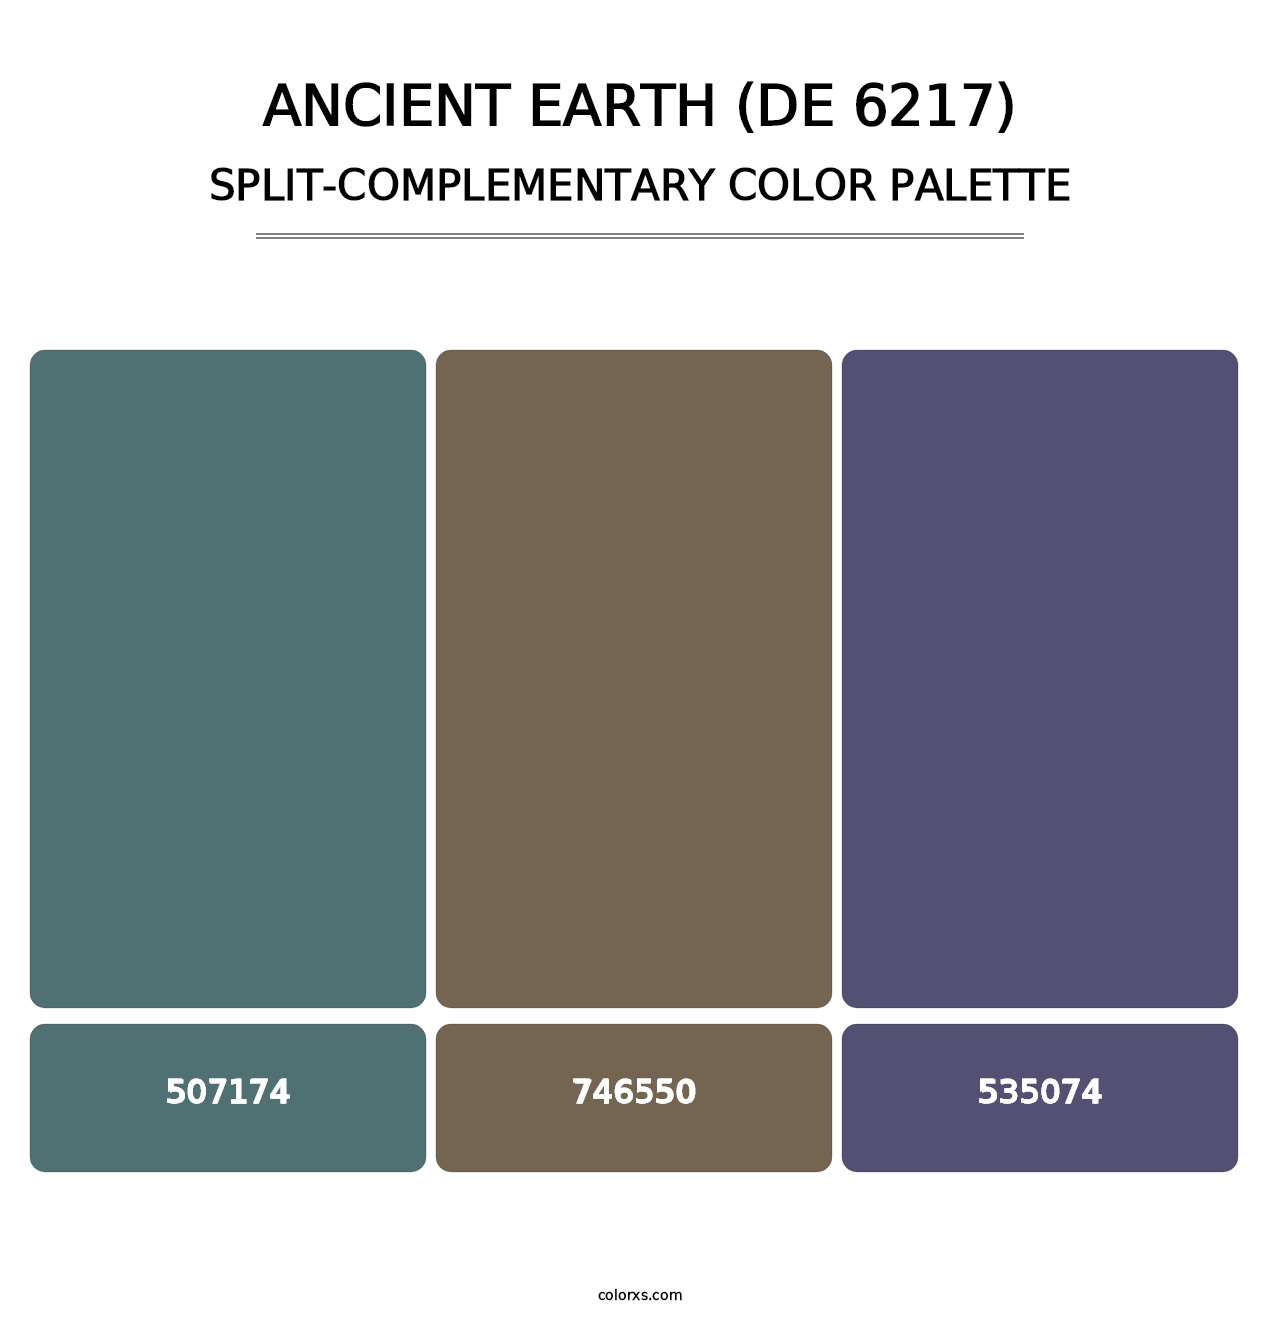 Ancient Earth (DE 6217) - Split-Complementary Color Palette